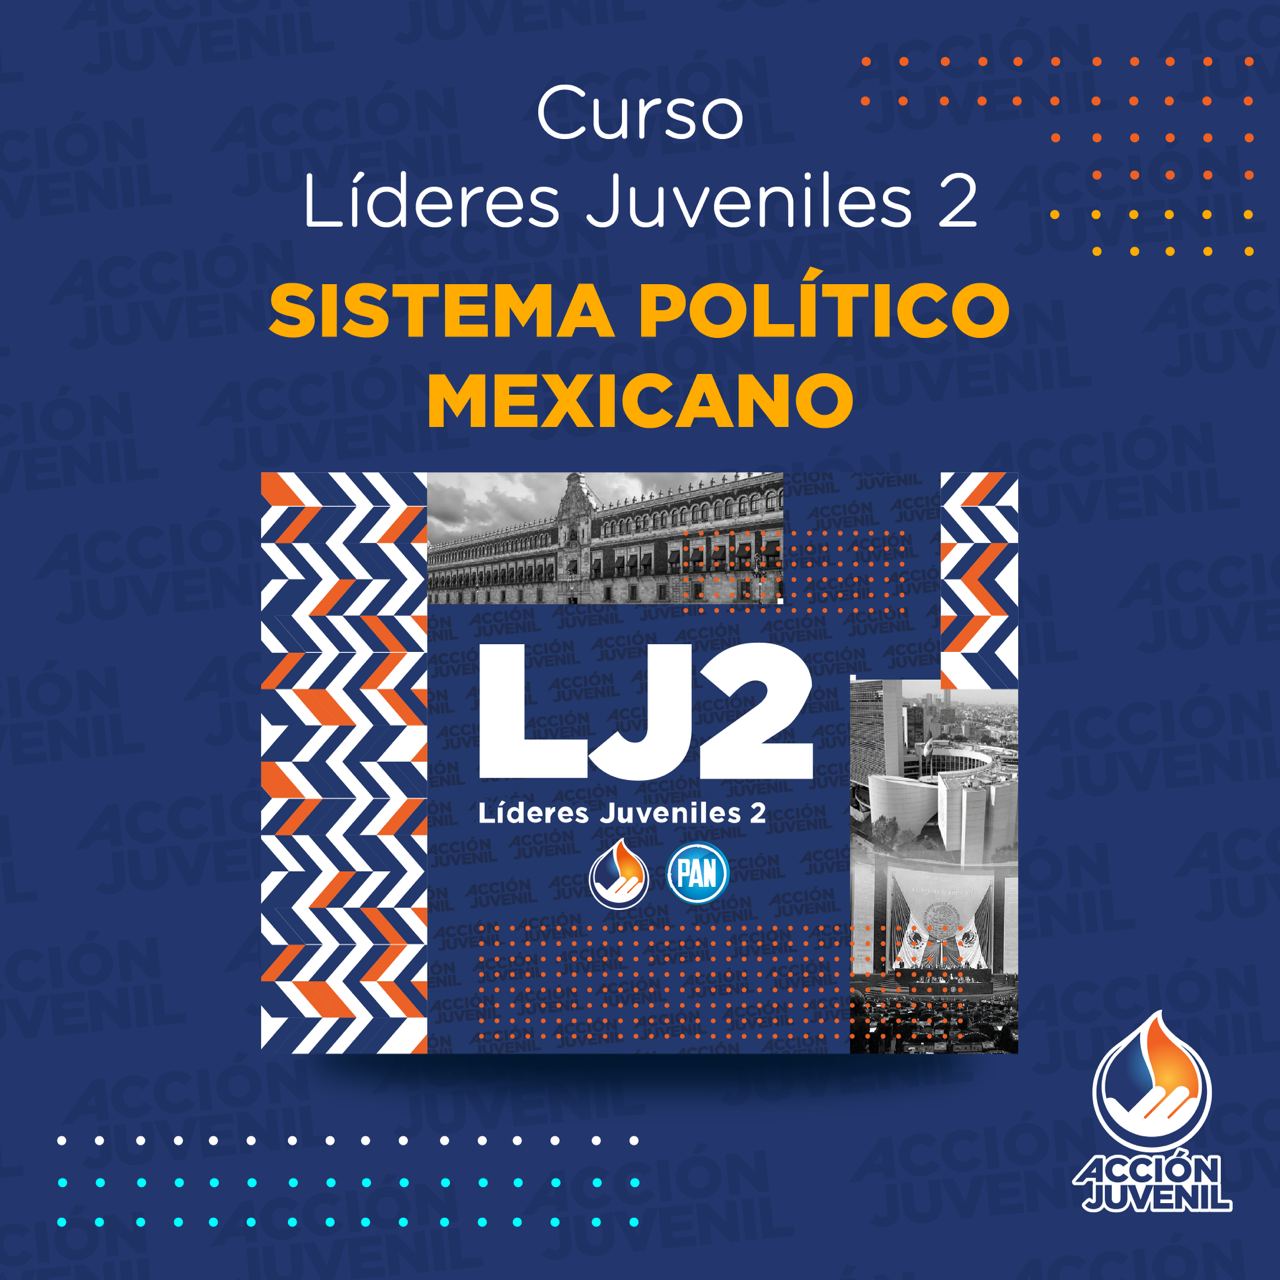 Curso Líderes Juveniles 2 Sistema Político Mexicano Cuauhtémoc, CHH 26/11/22